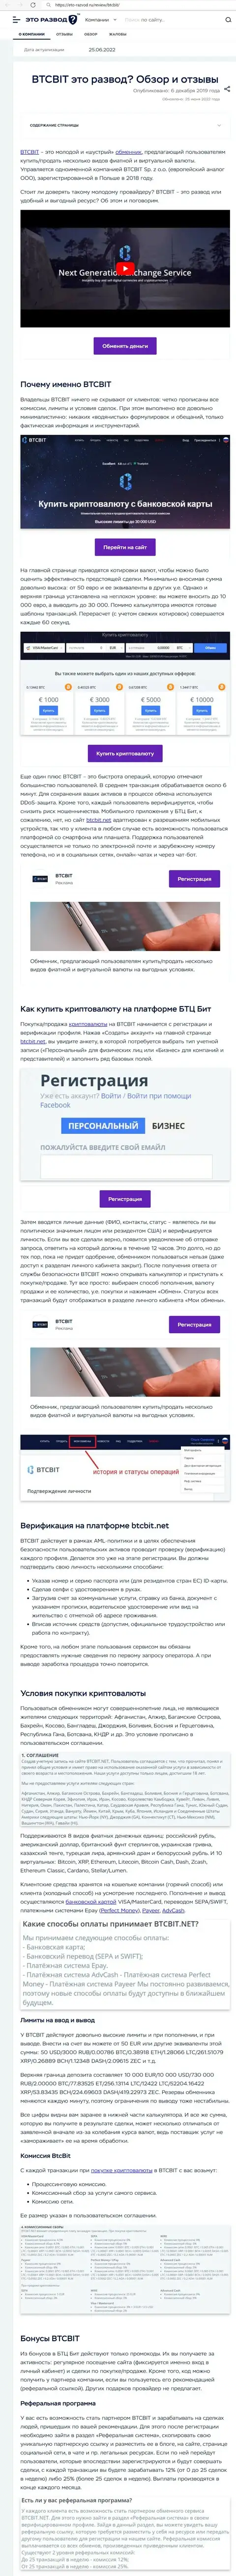 Разбор деятельности и условия сотрудничества компании BTCBIT Sp. z.o.o в публикации на интернет-ресурсе eto razvod ru